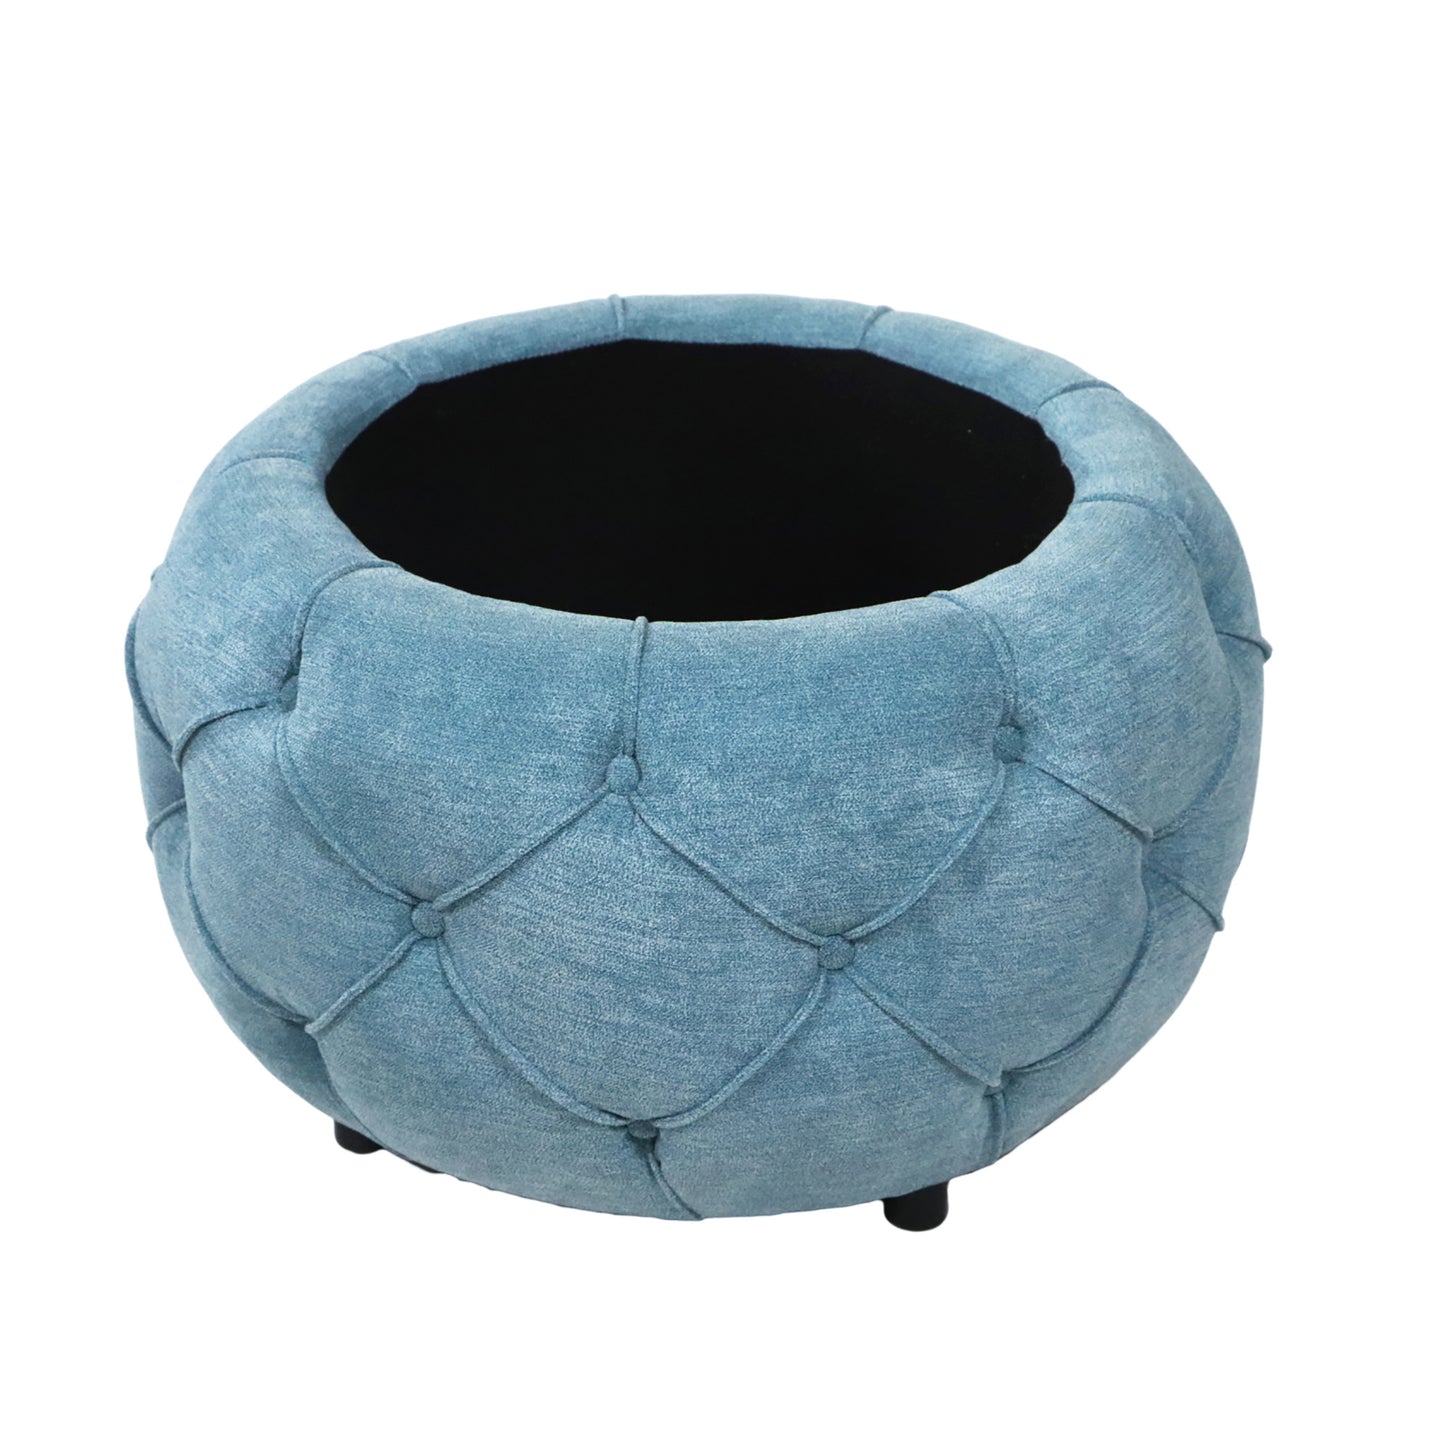 Button Tufted Round Storage Ottoman, Burlap Blue